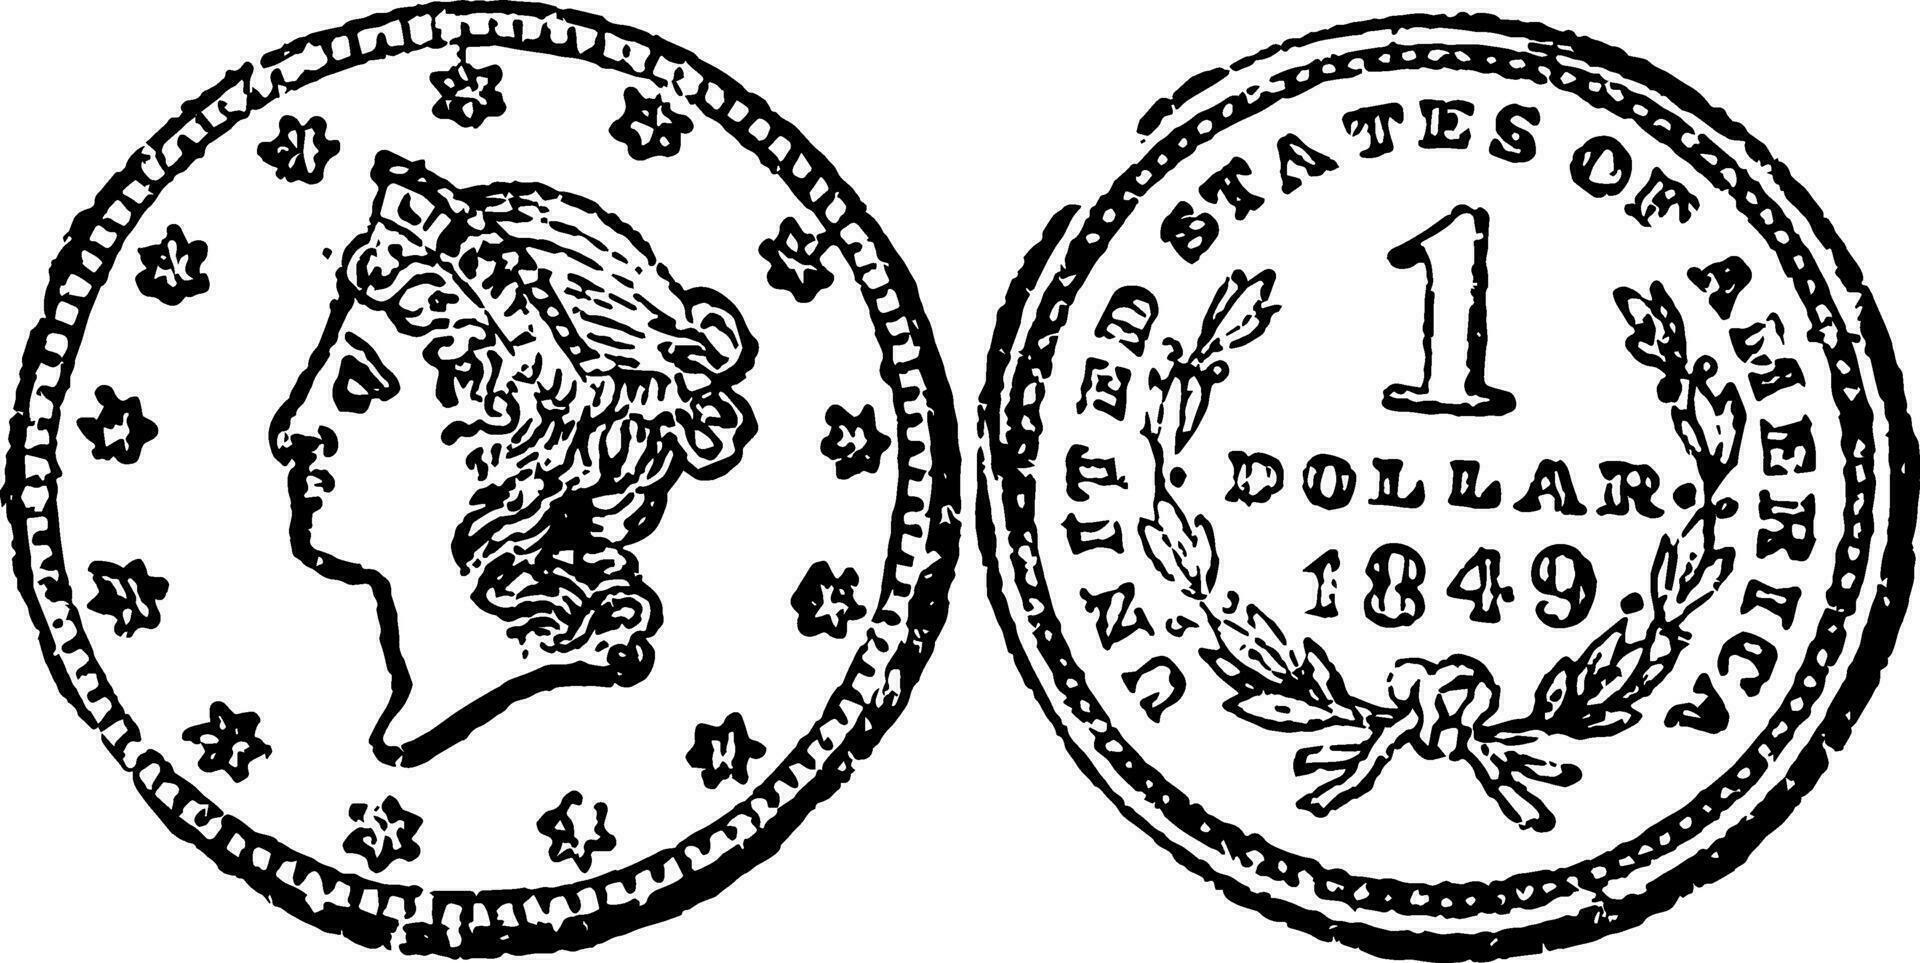 Gold Quarter Eagle Coin, 1796 vintage illustration. vector